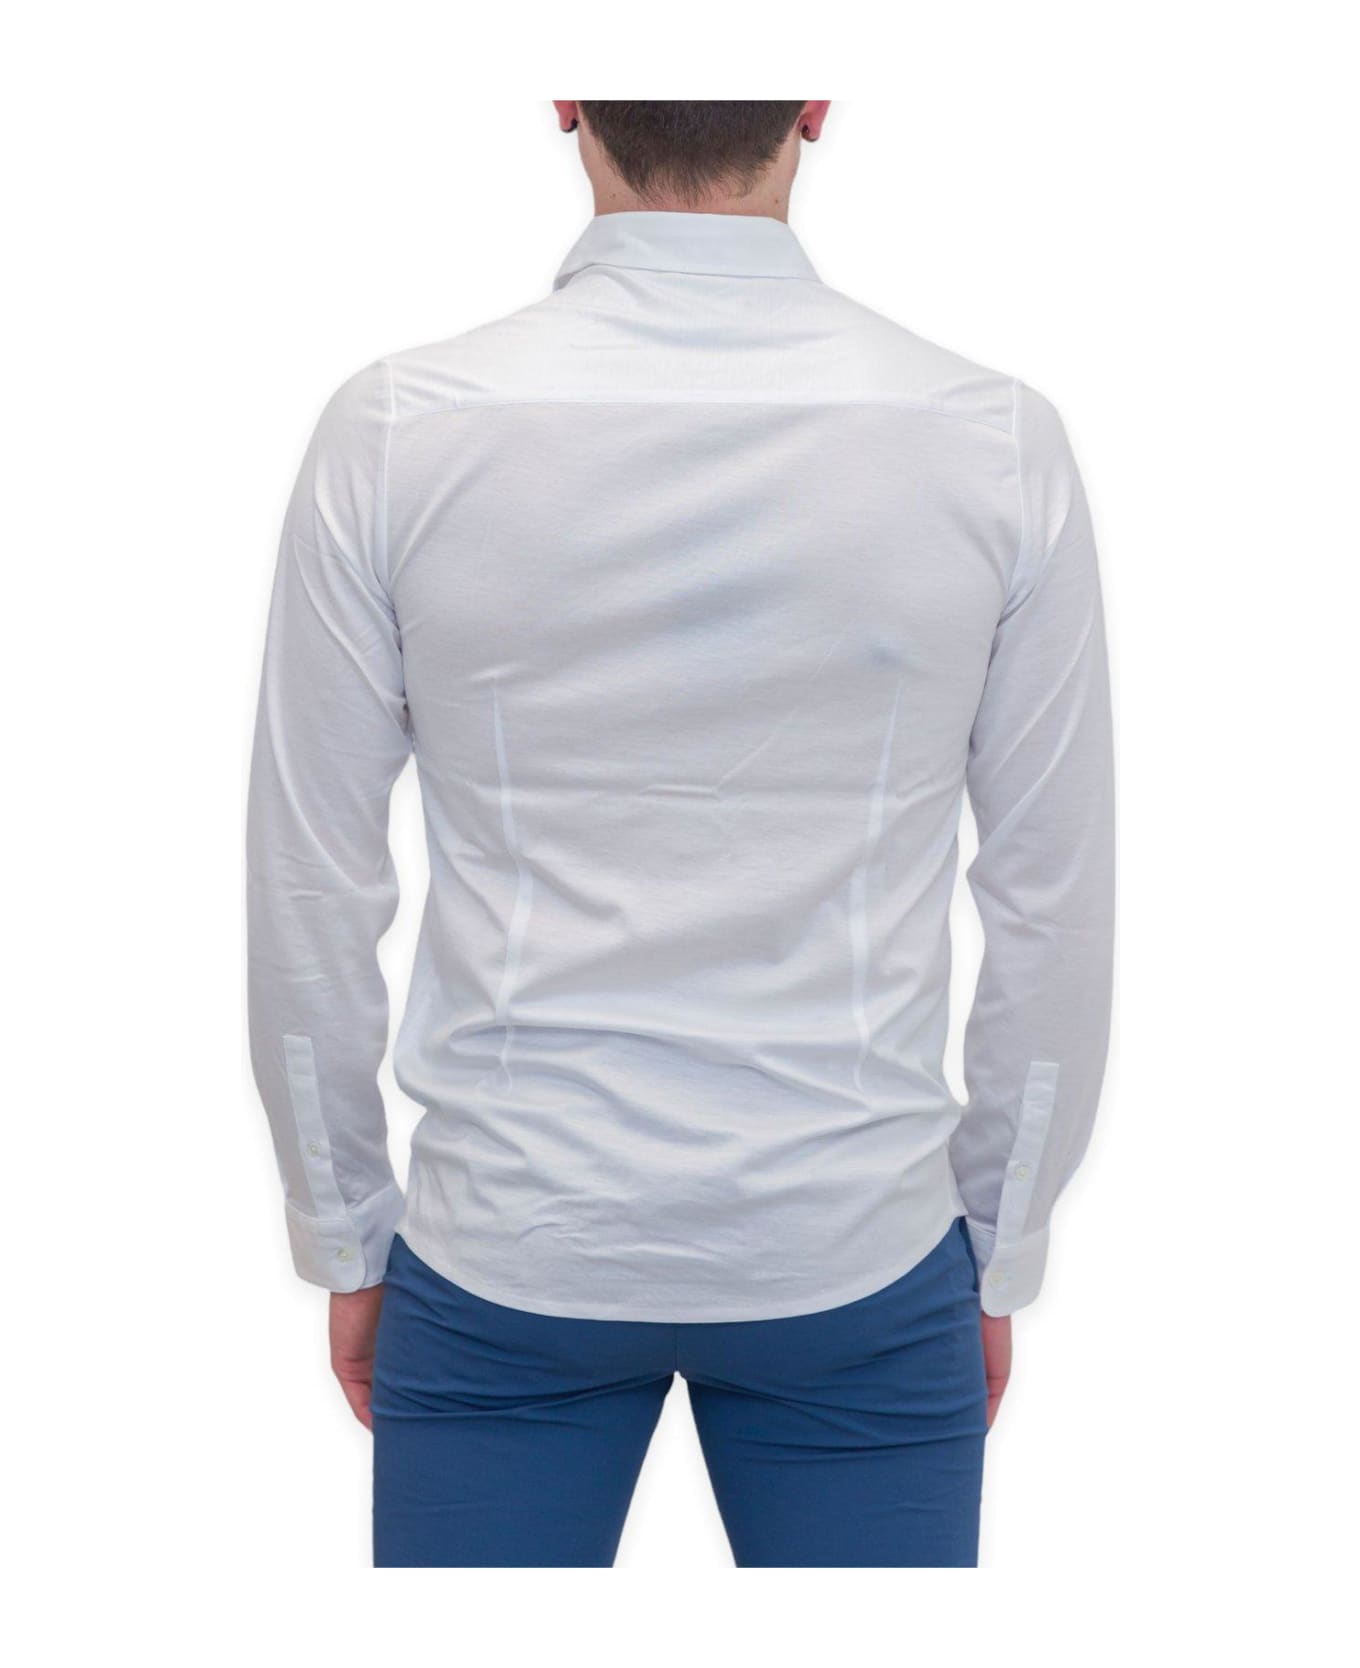 Emporio Armani Curved Hem Buttoned Shirt - White